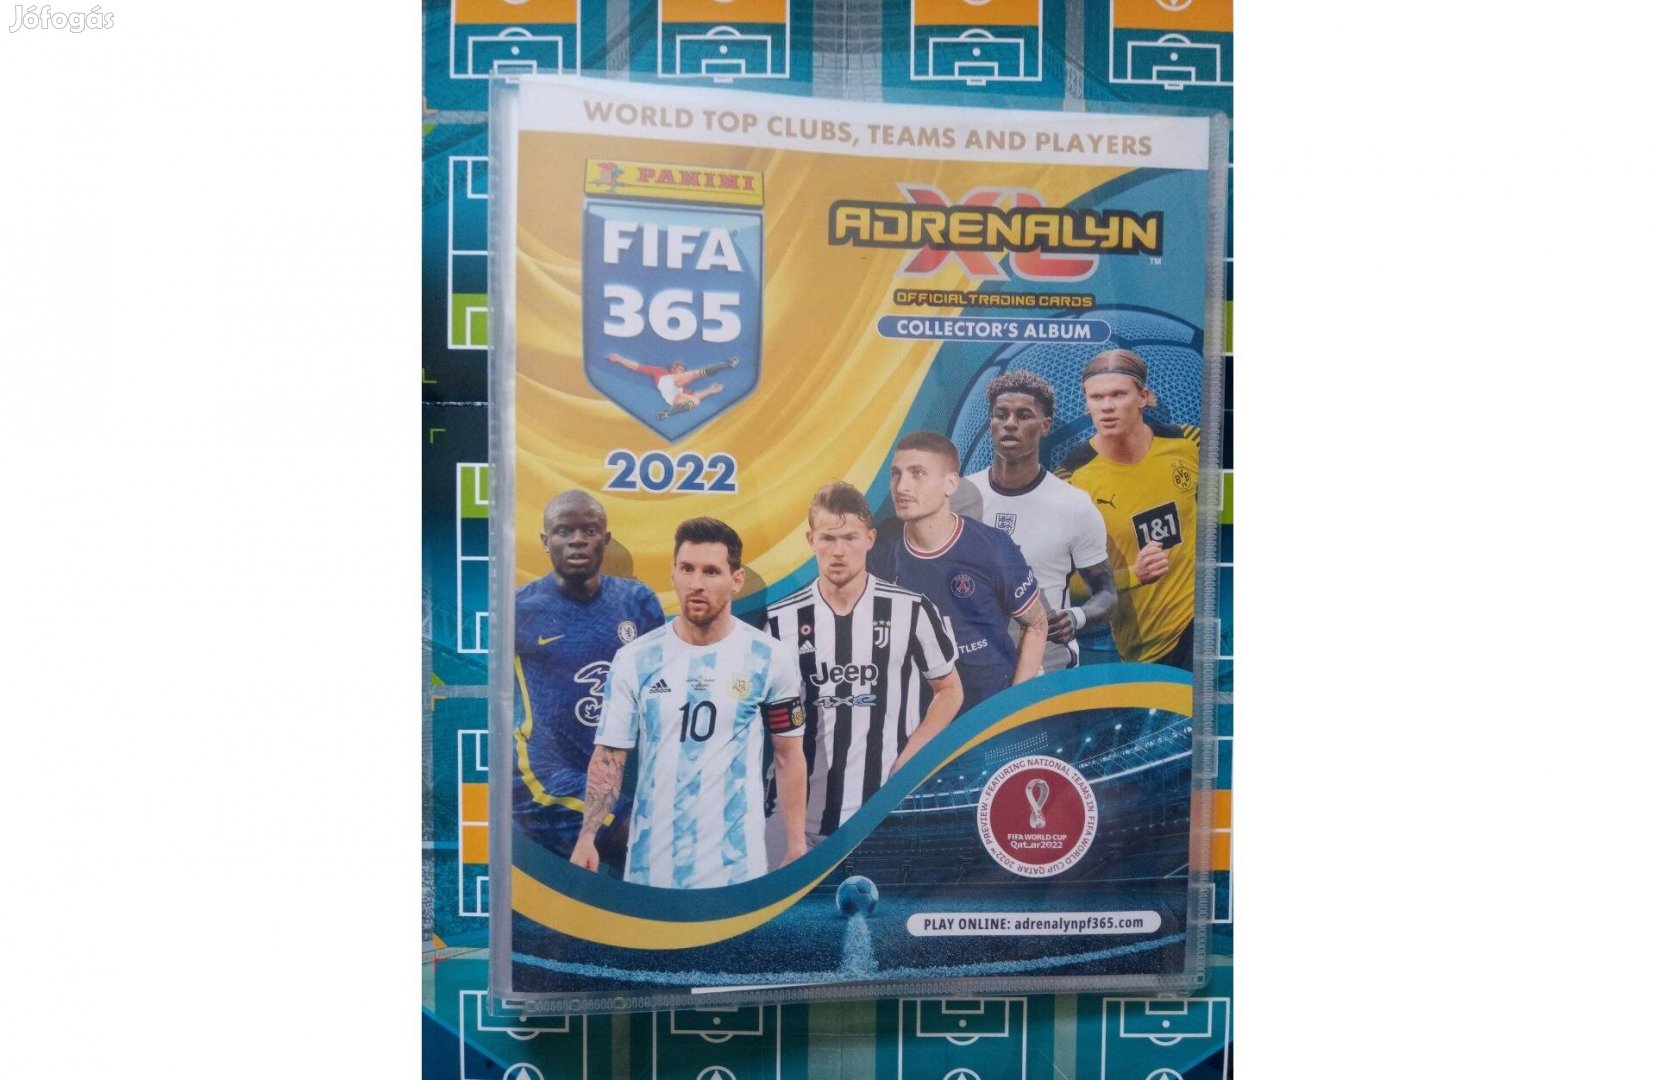 FIFA 365 2022 Adrenalyn kártyagyűjtő album